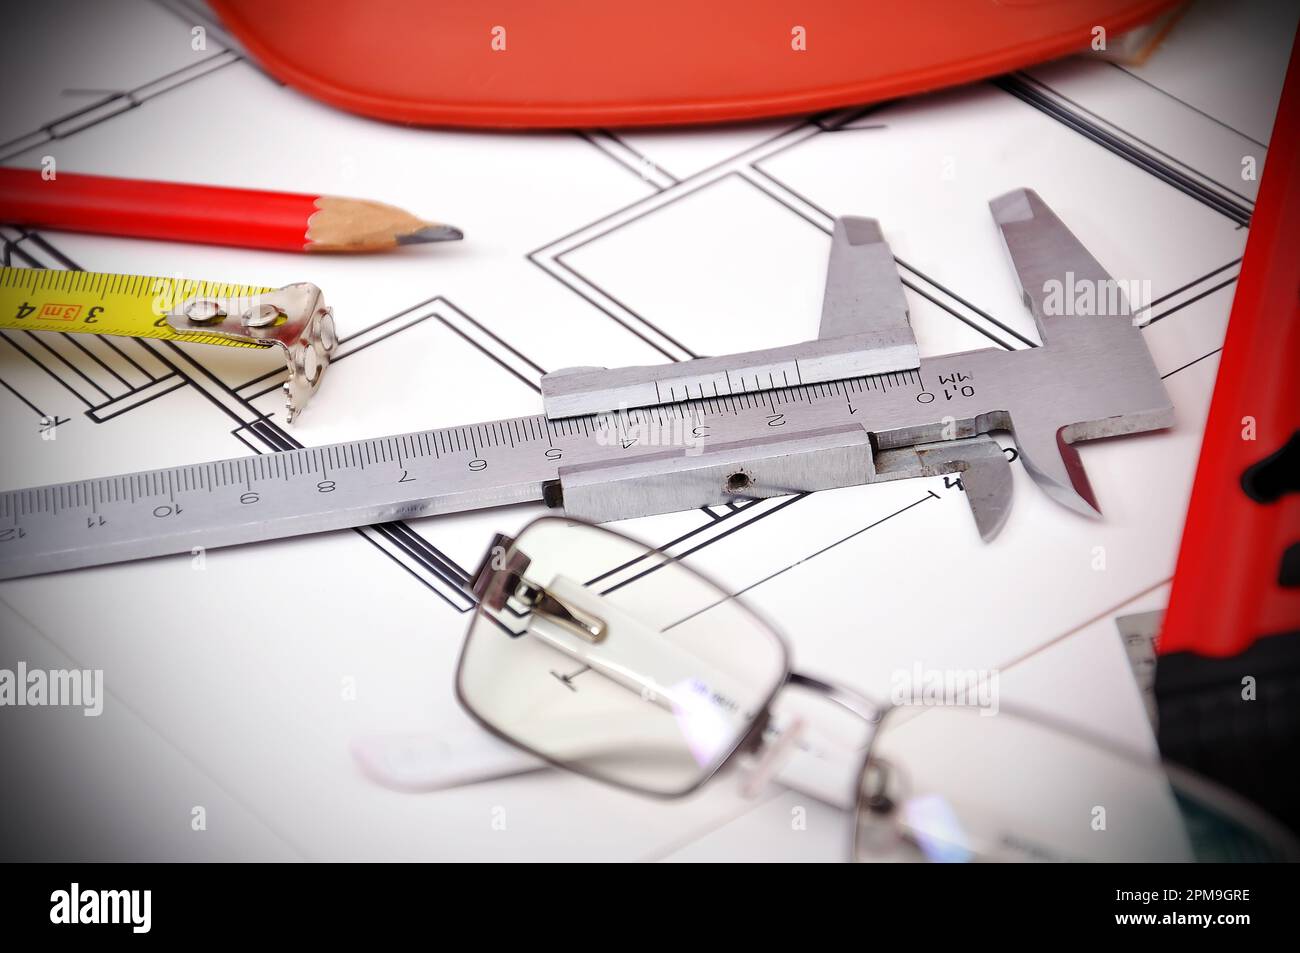 instruments de mesure, crayon et lunettes sur table Banque D'Images